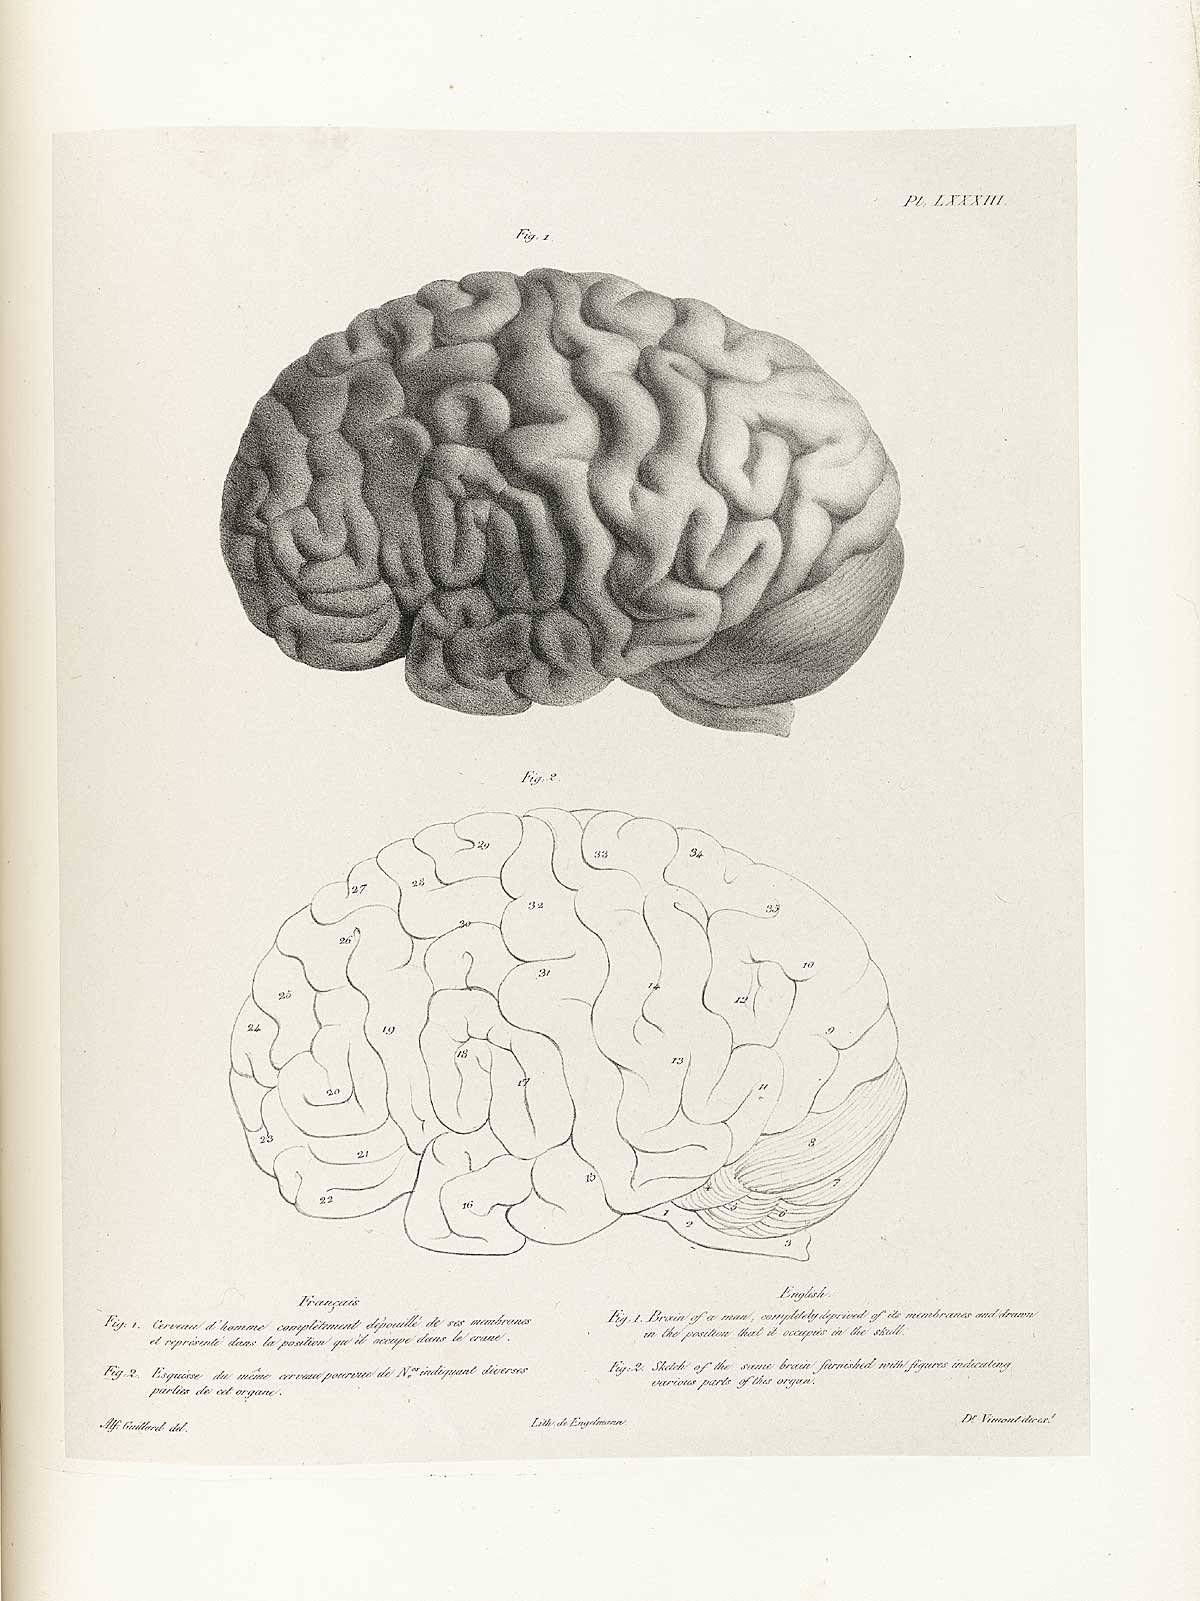 Table 83 of Joseph Vimont's Traité de phrénologie humaine et comparée, featuring two views of the brain of a man with its membranes removed.